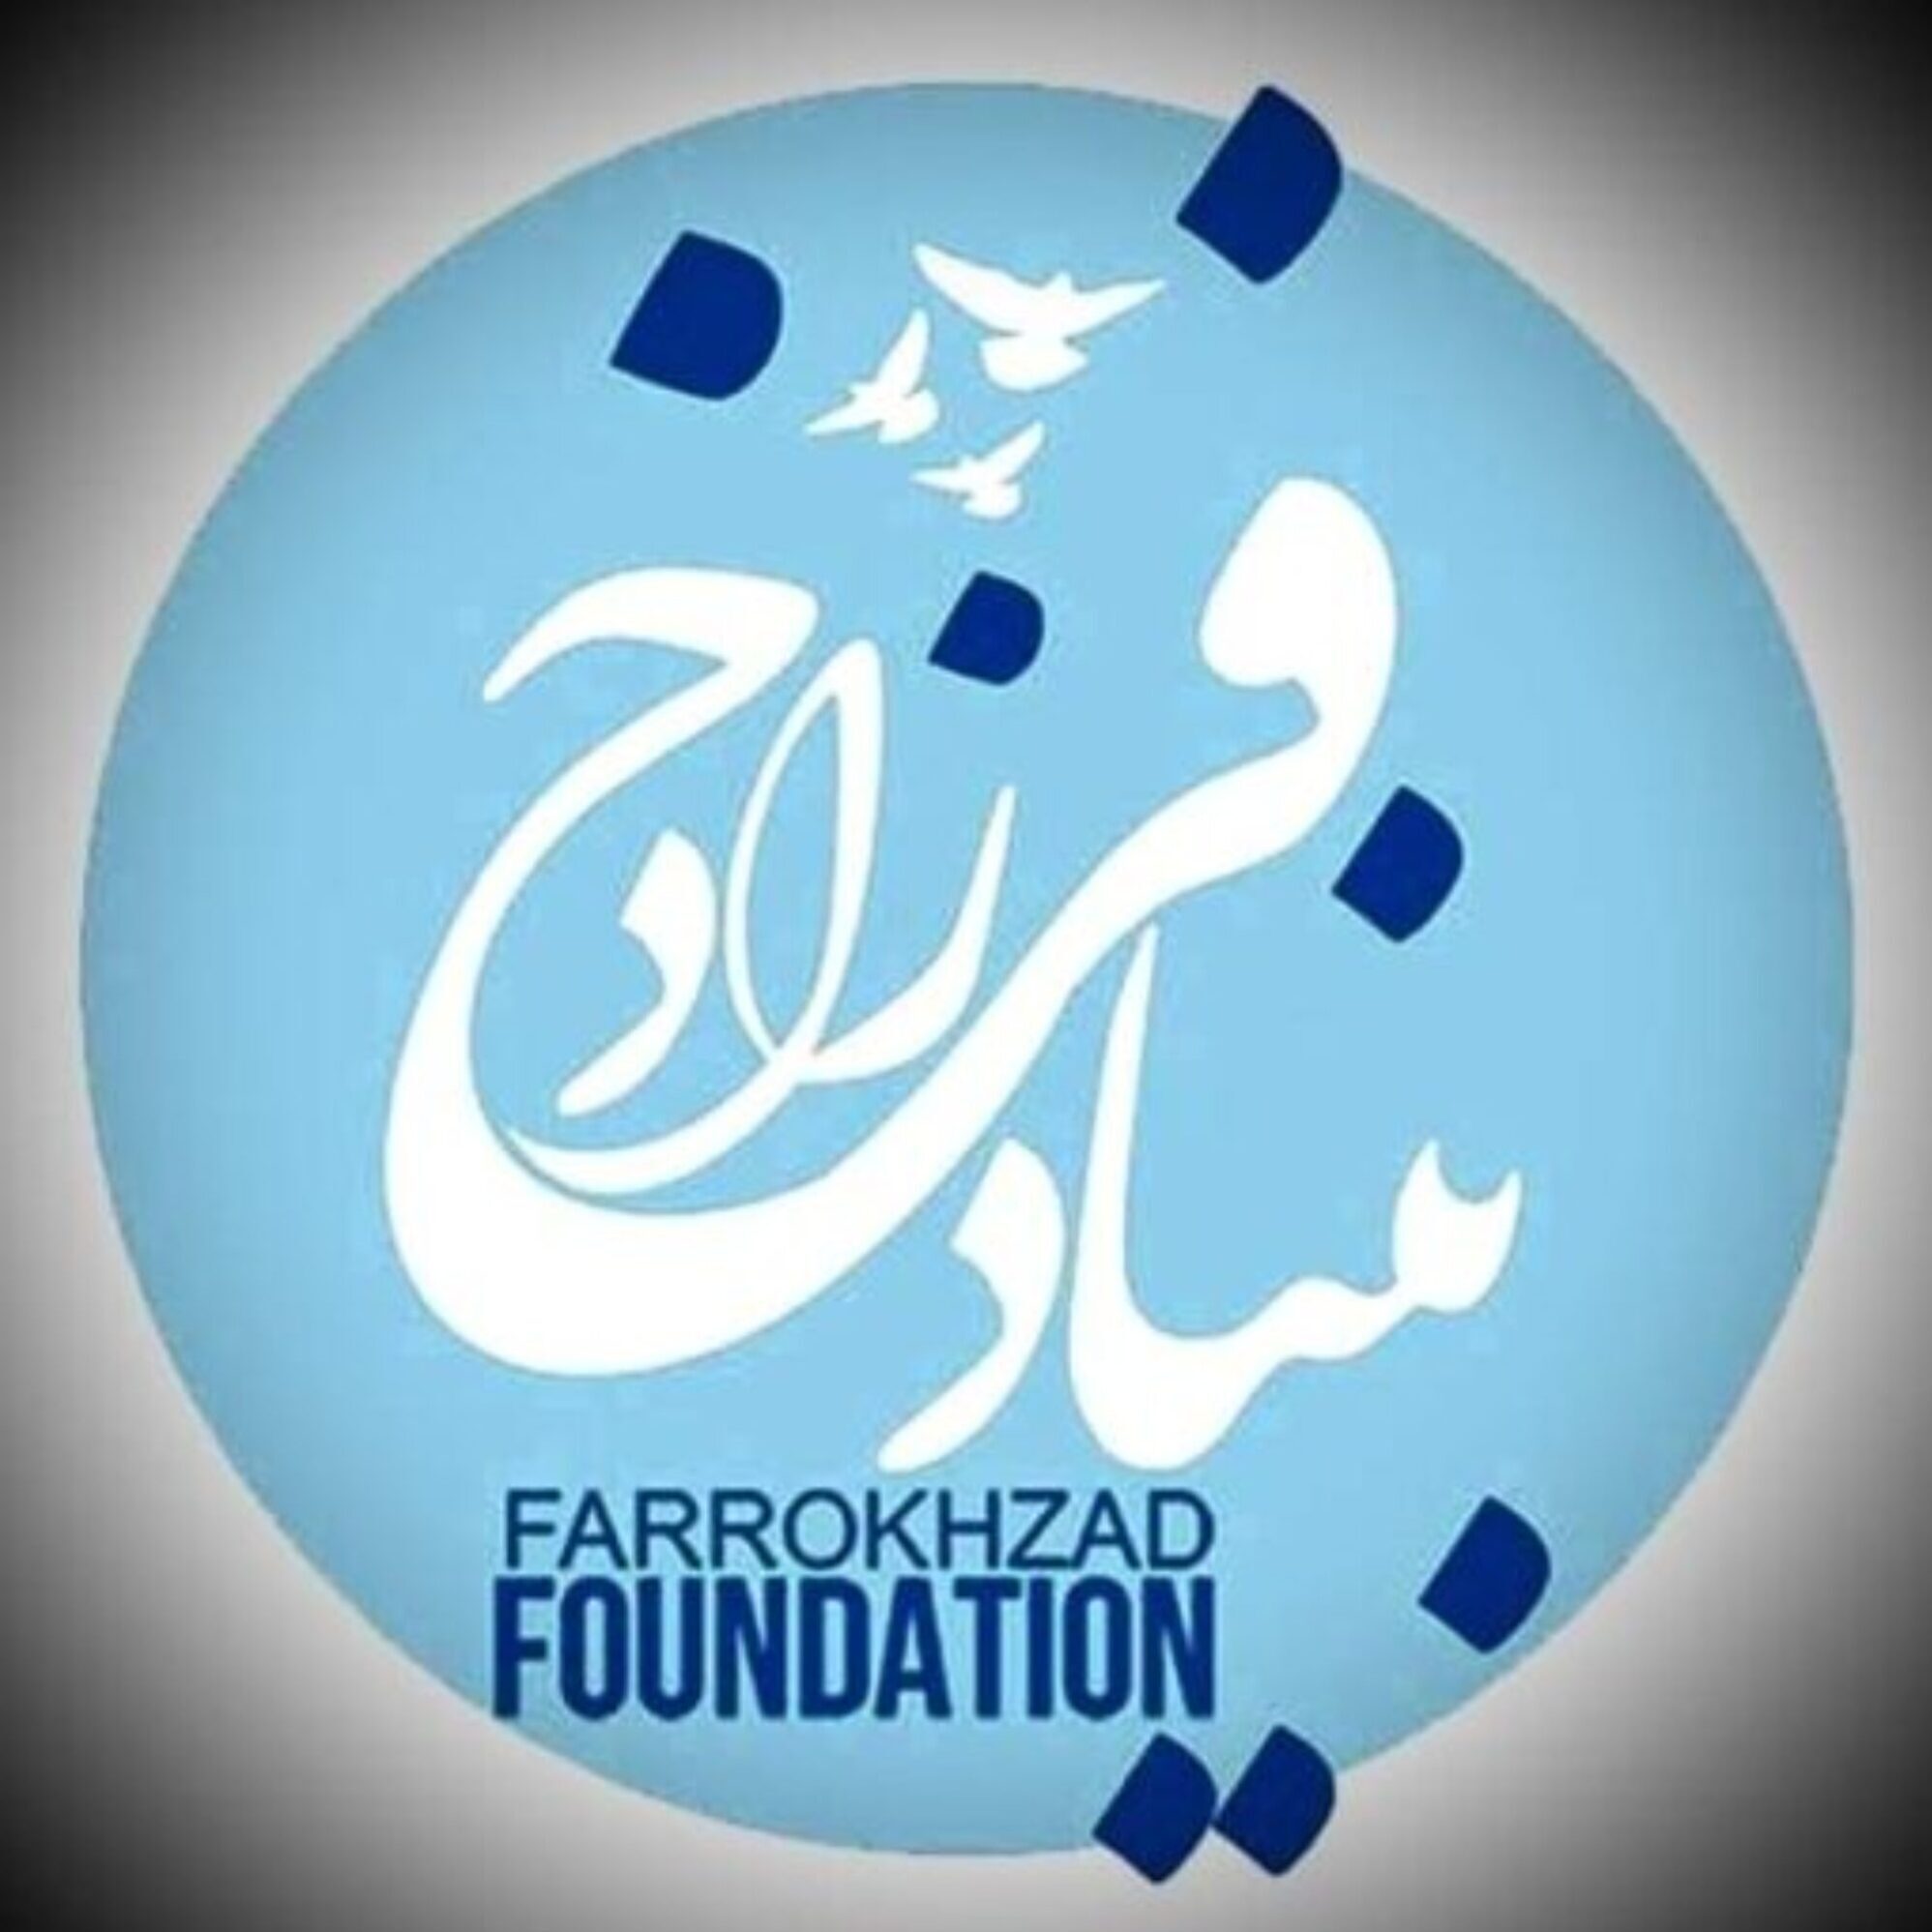 FARROKHZAD FOUNDATION